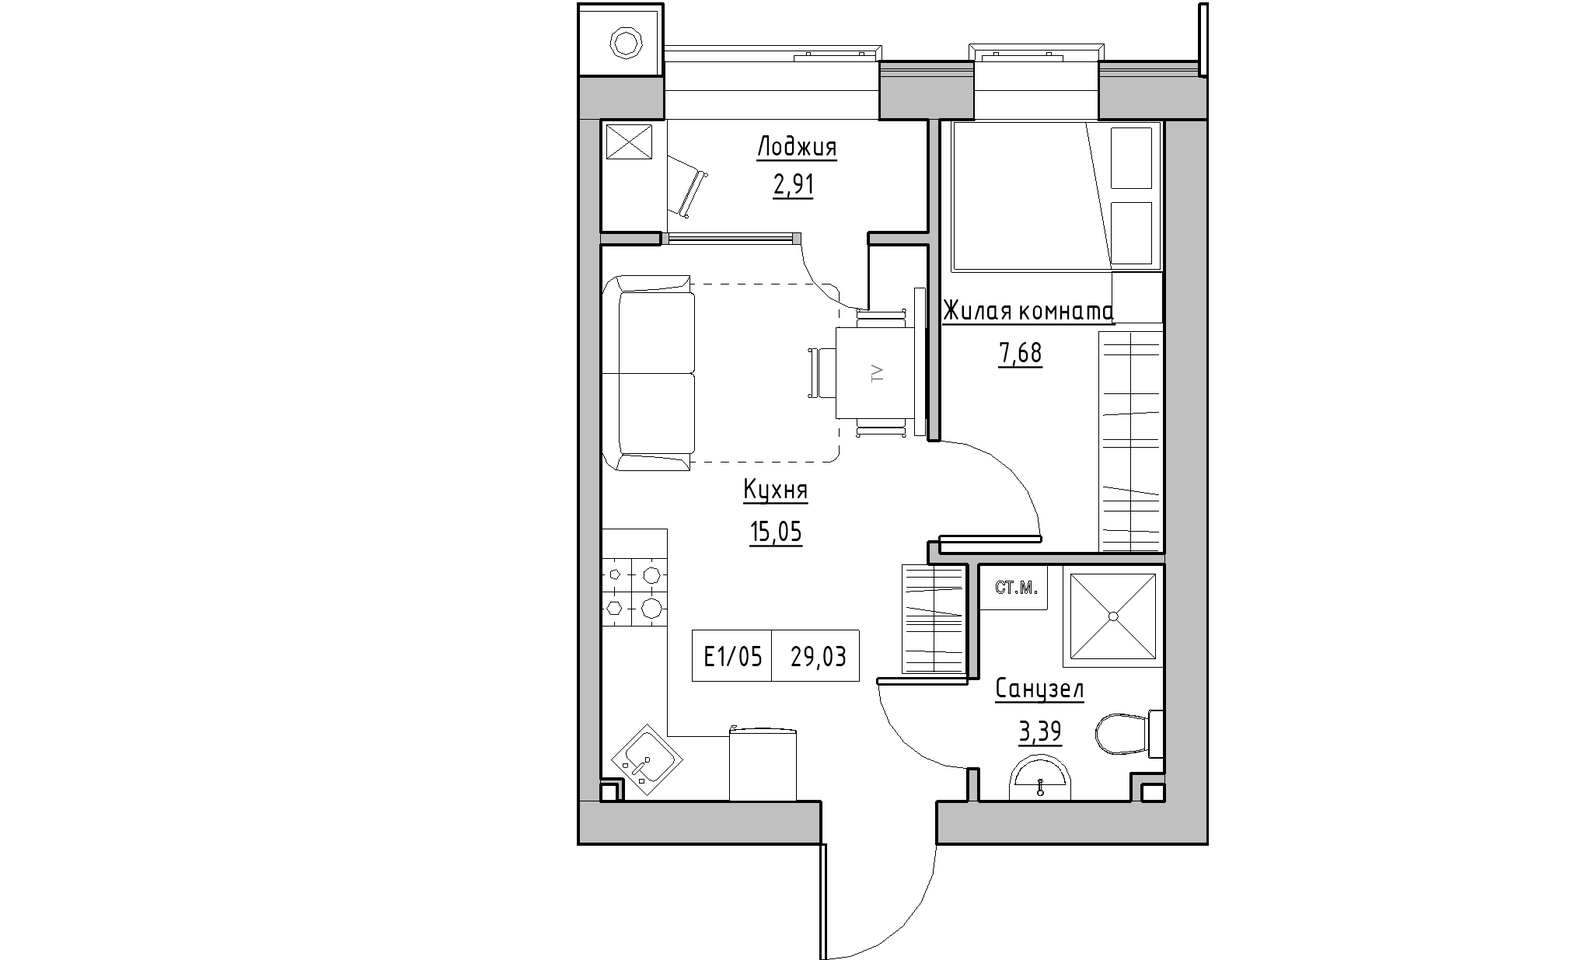 Планування 1-к квартира площею 29.03м2, KS-014-02/0007.